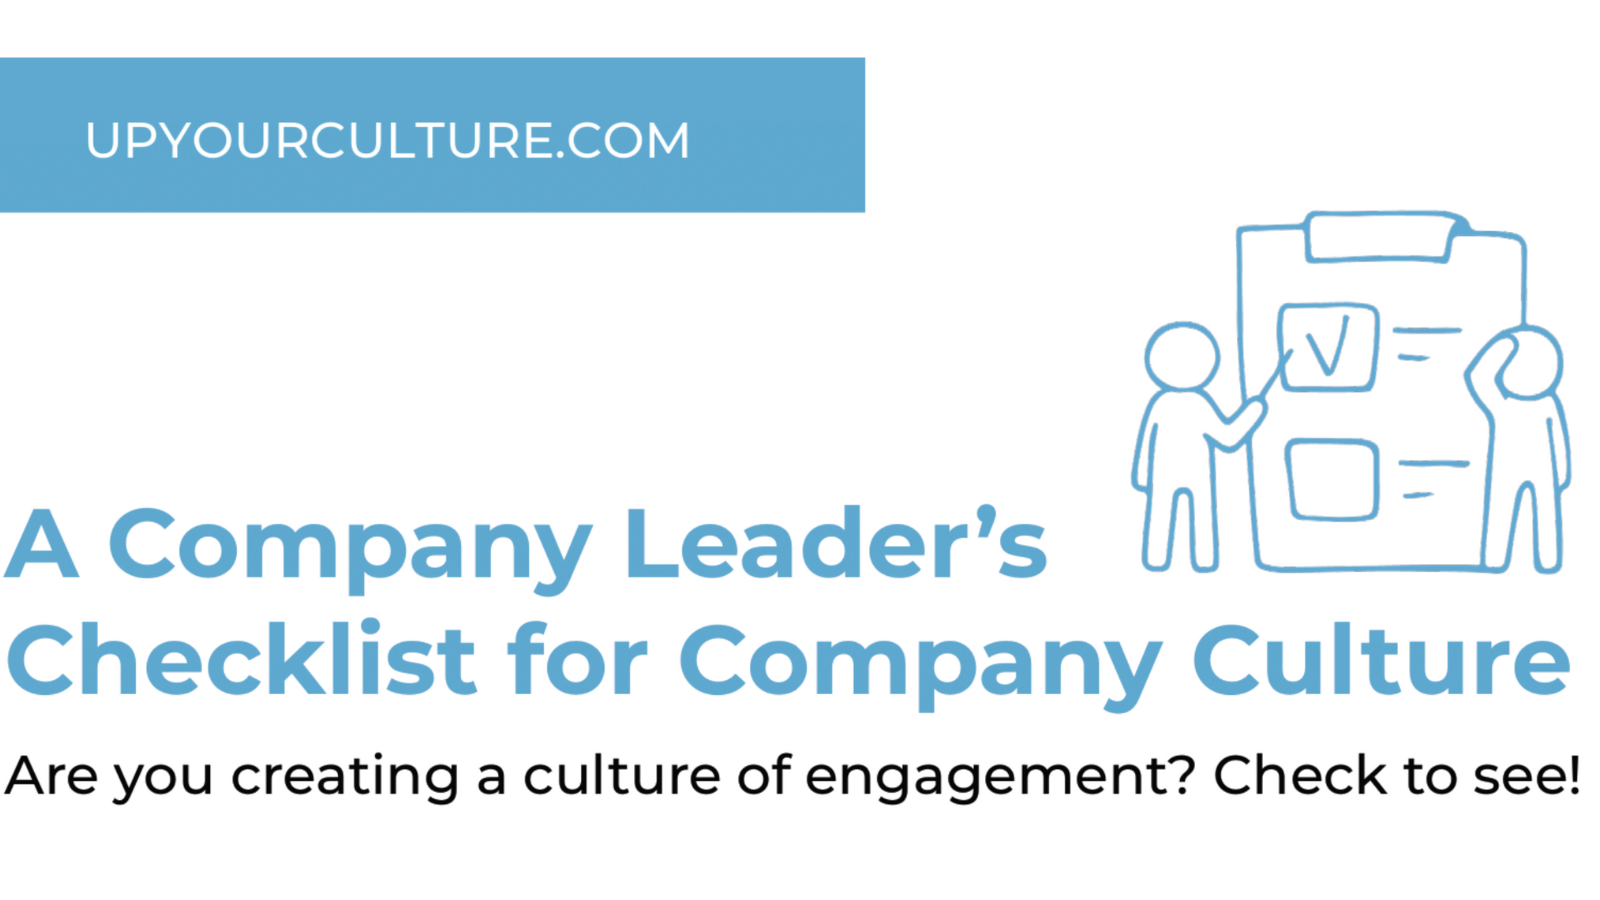 A Company Leader's Checklist for Company Culture